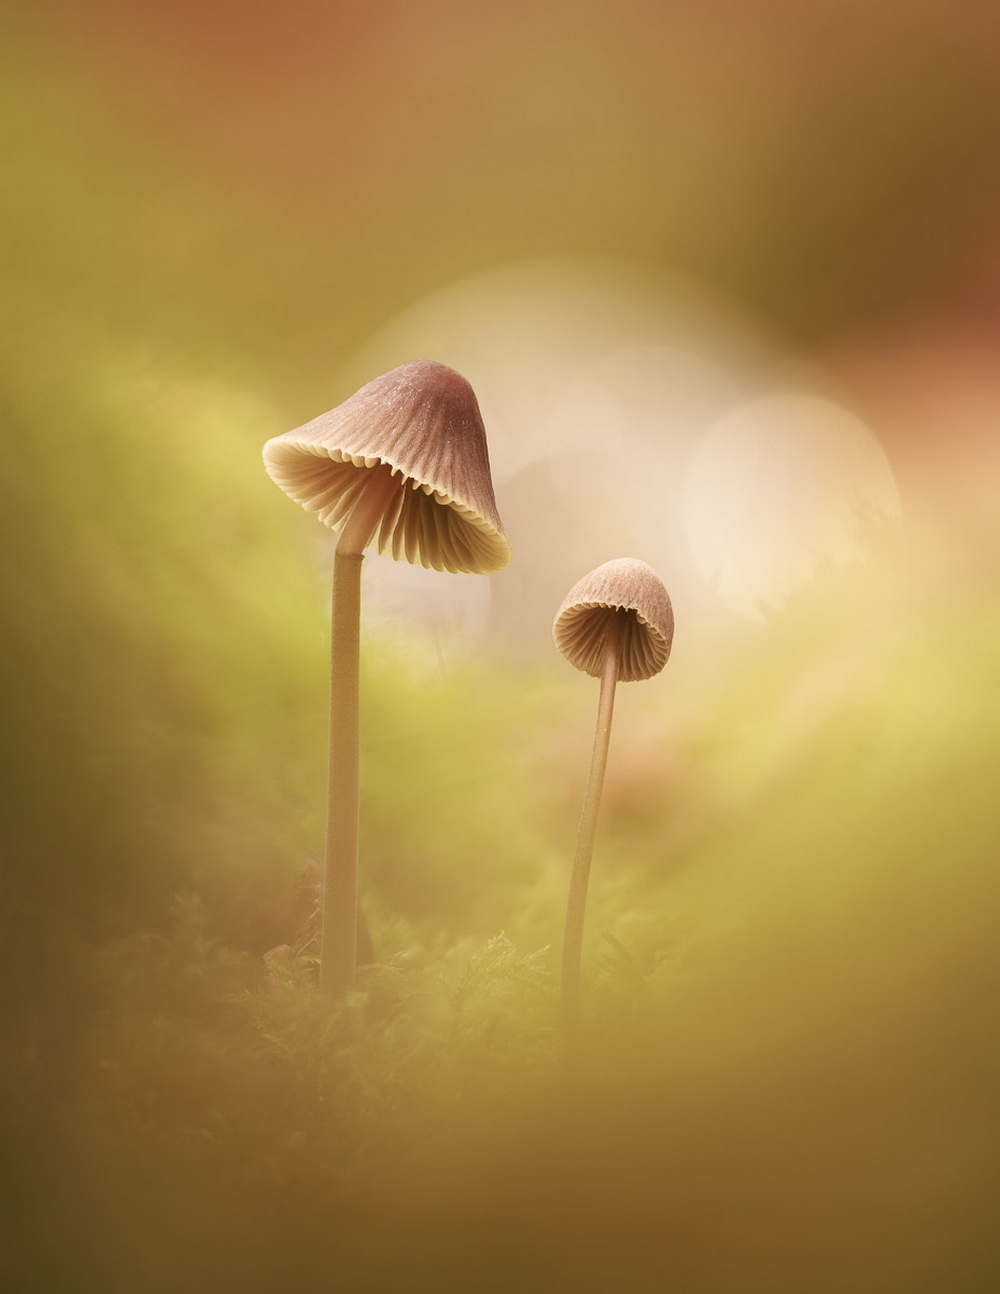 Эффектные снимки грибов с премии Садовый фотограф года